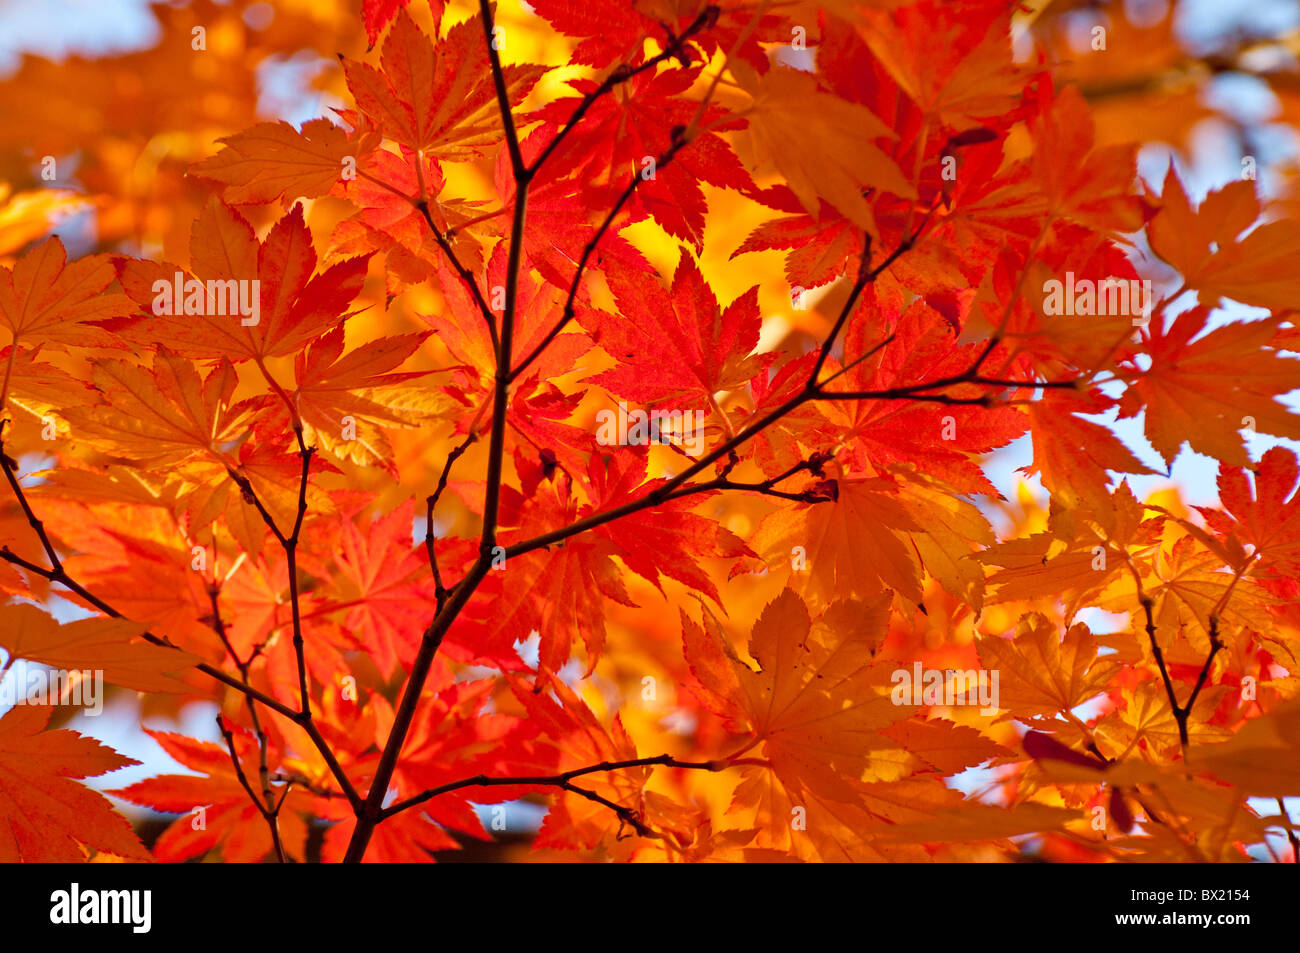 USA, Idaho, Stadt von Boise, malerischen Blick auf die Farben des Herbstes, Bäume und Blätter auf die Boise River Greenbelt. Stockfoto